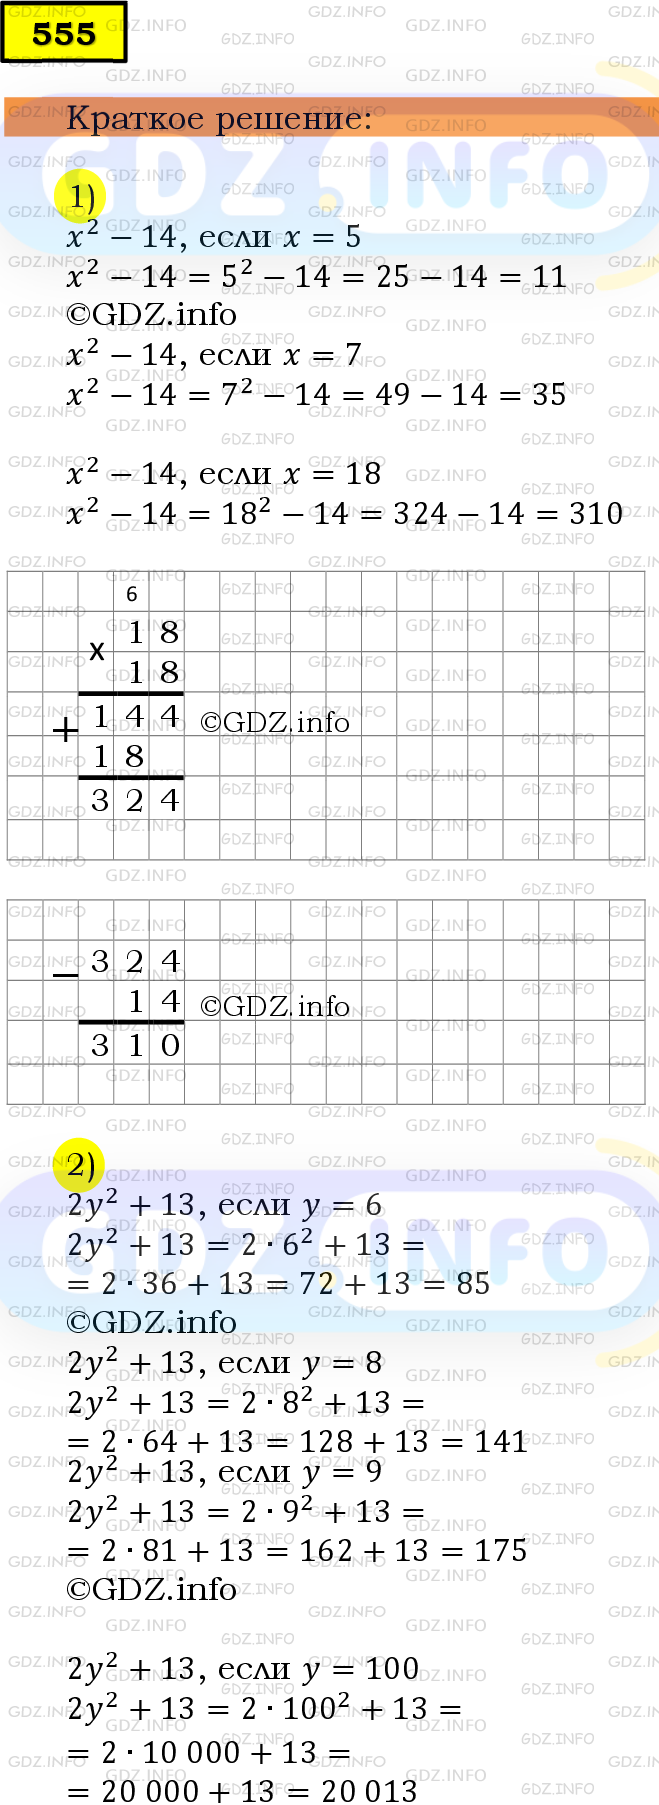 Фото решения 6: Номер №555 из ГДЗ по Математике 5 класс: Мерзляк А.Г. г.